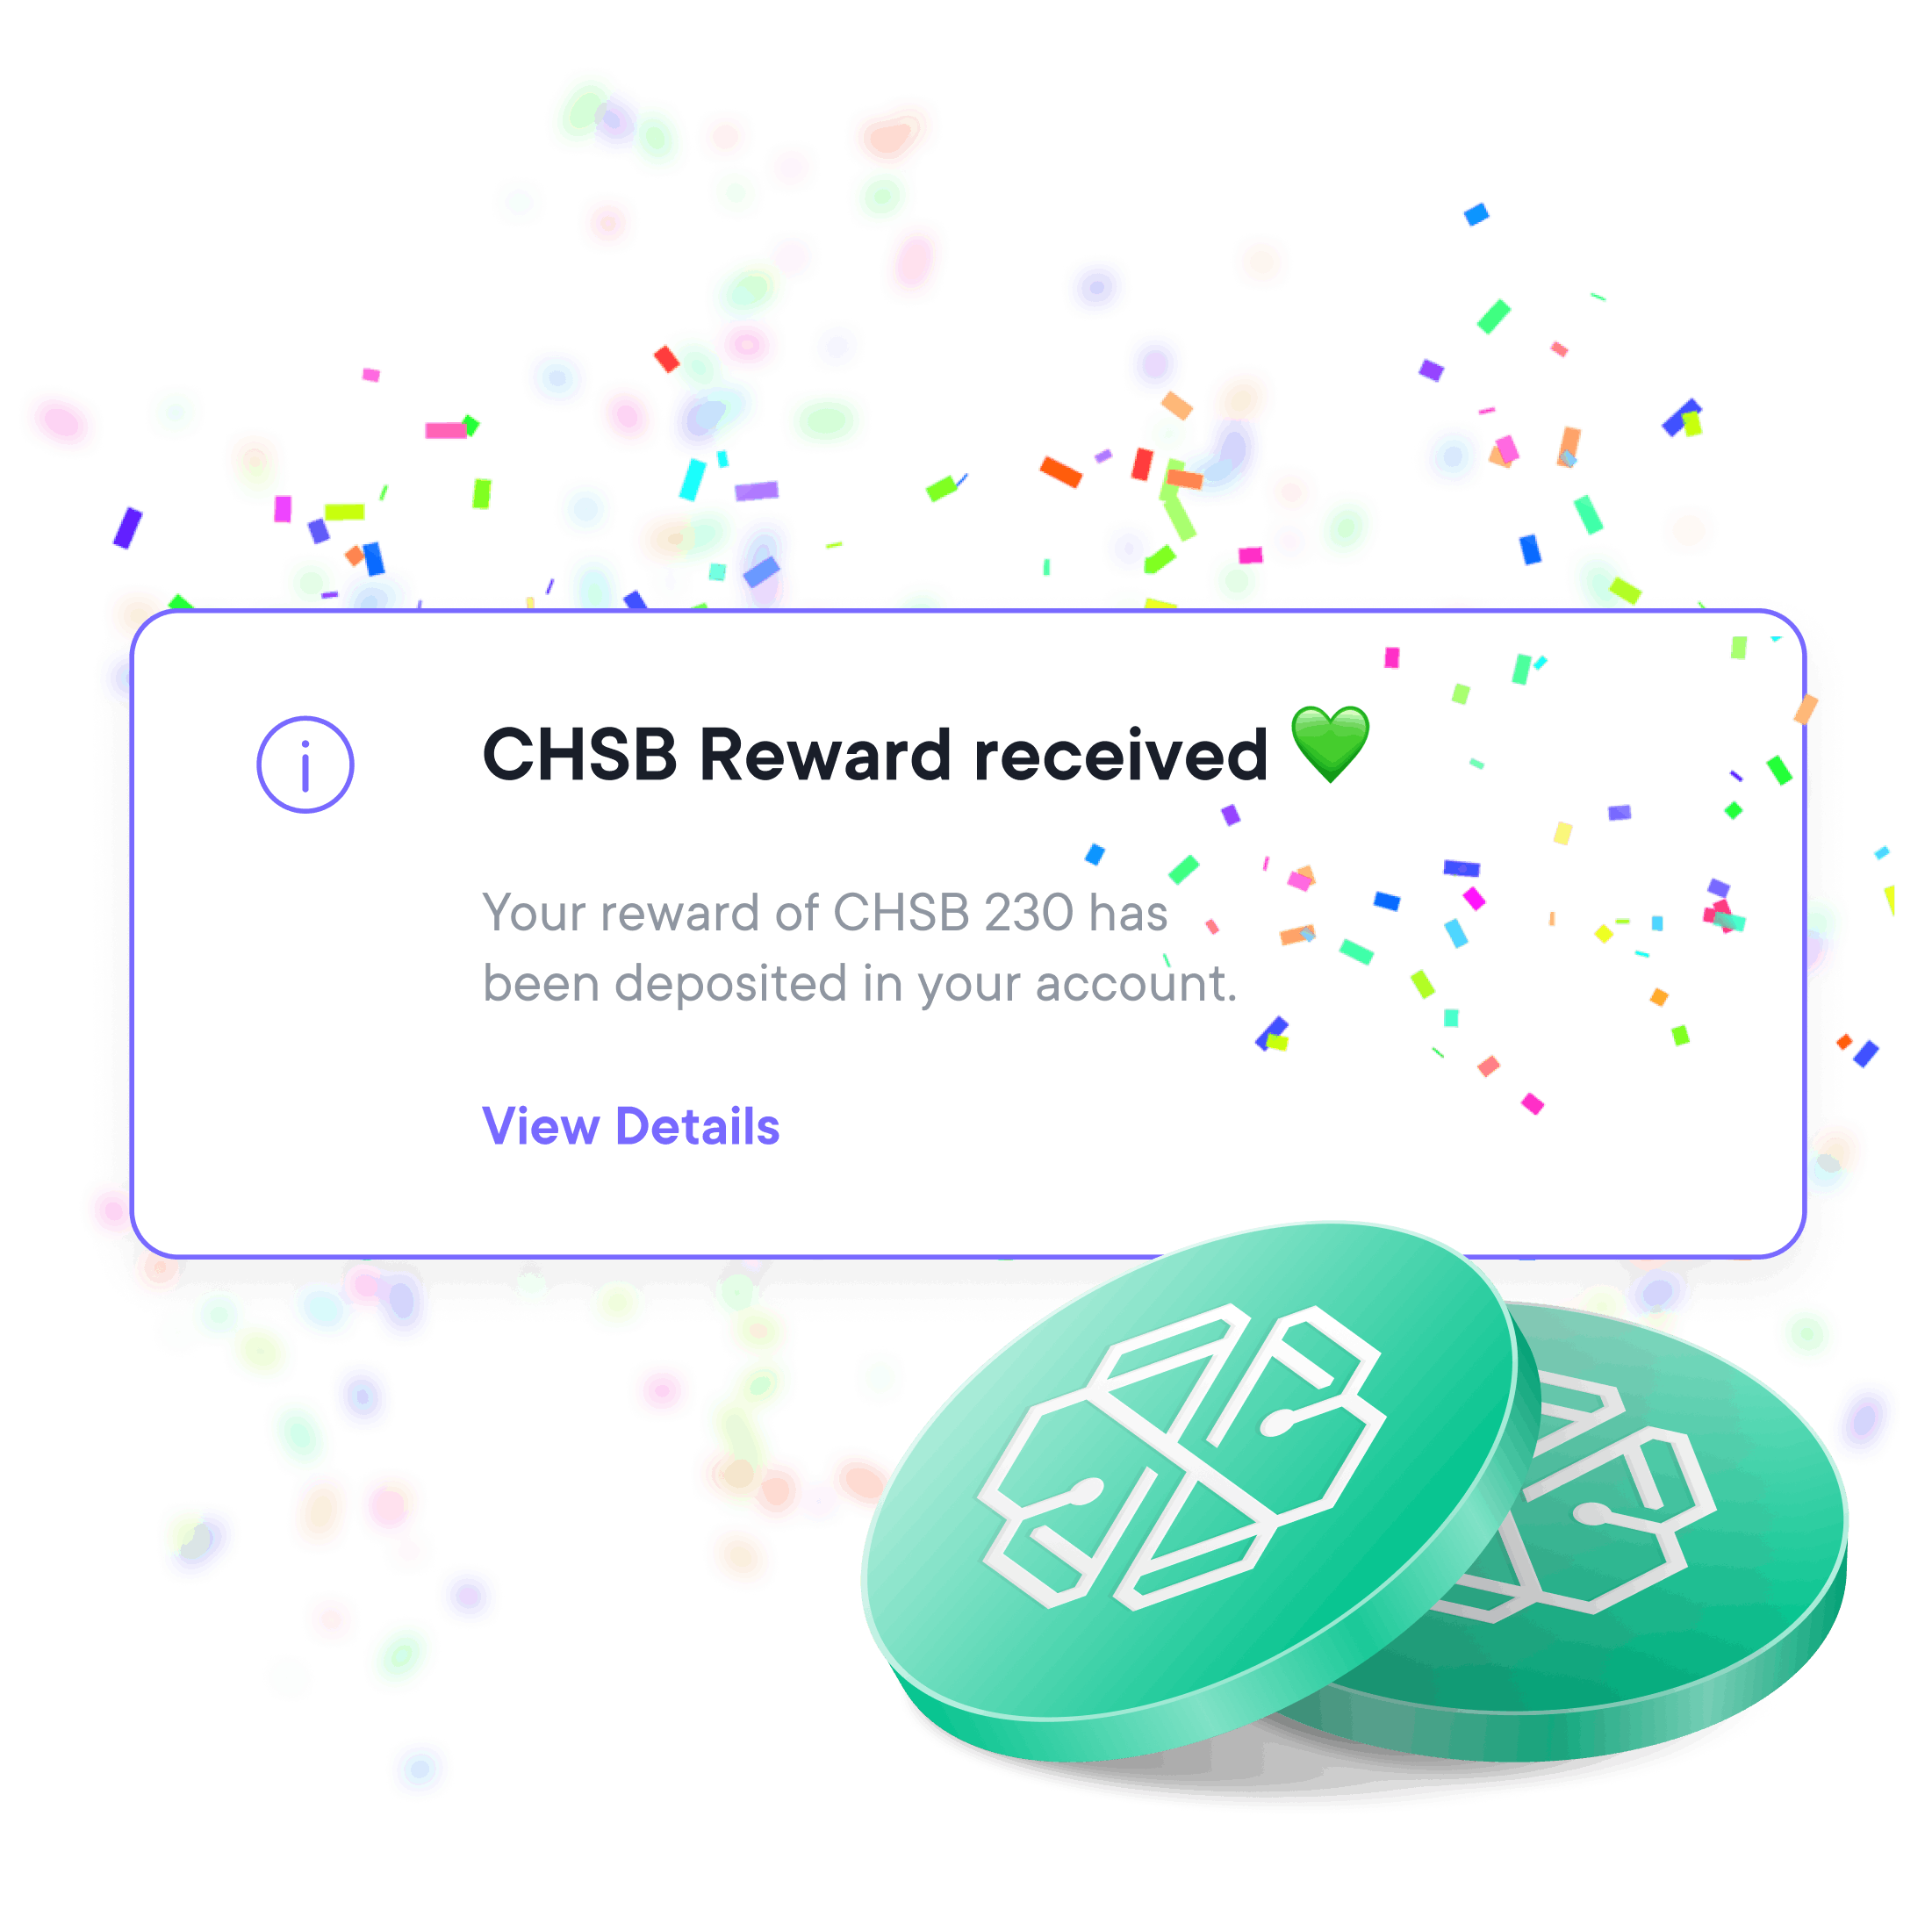 CHSB Rewards